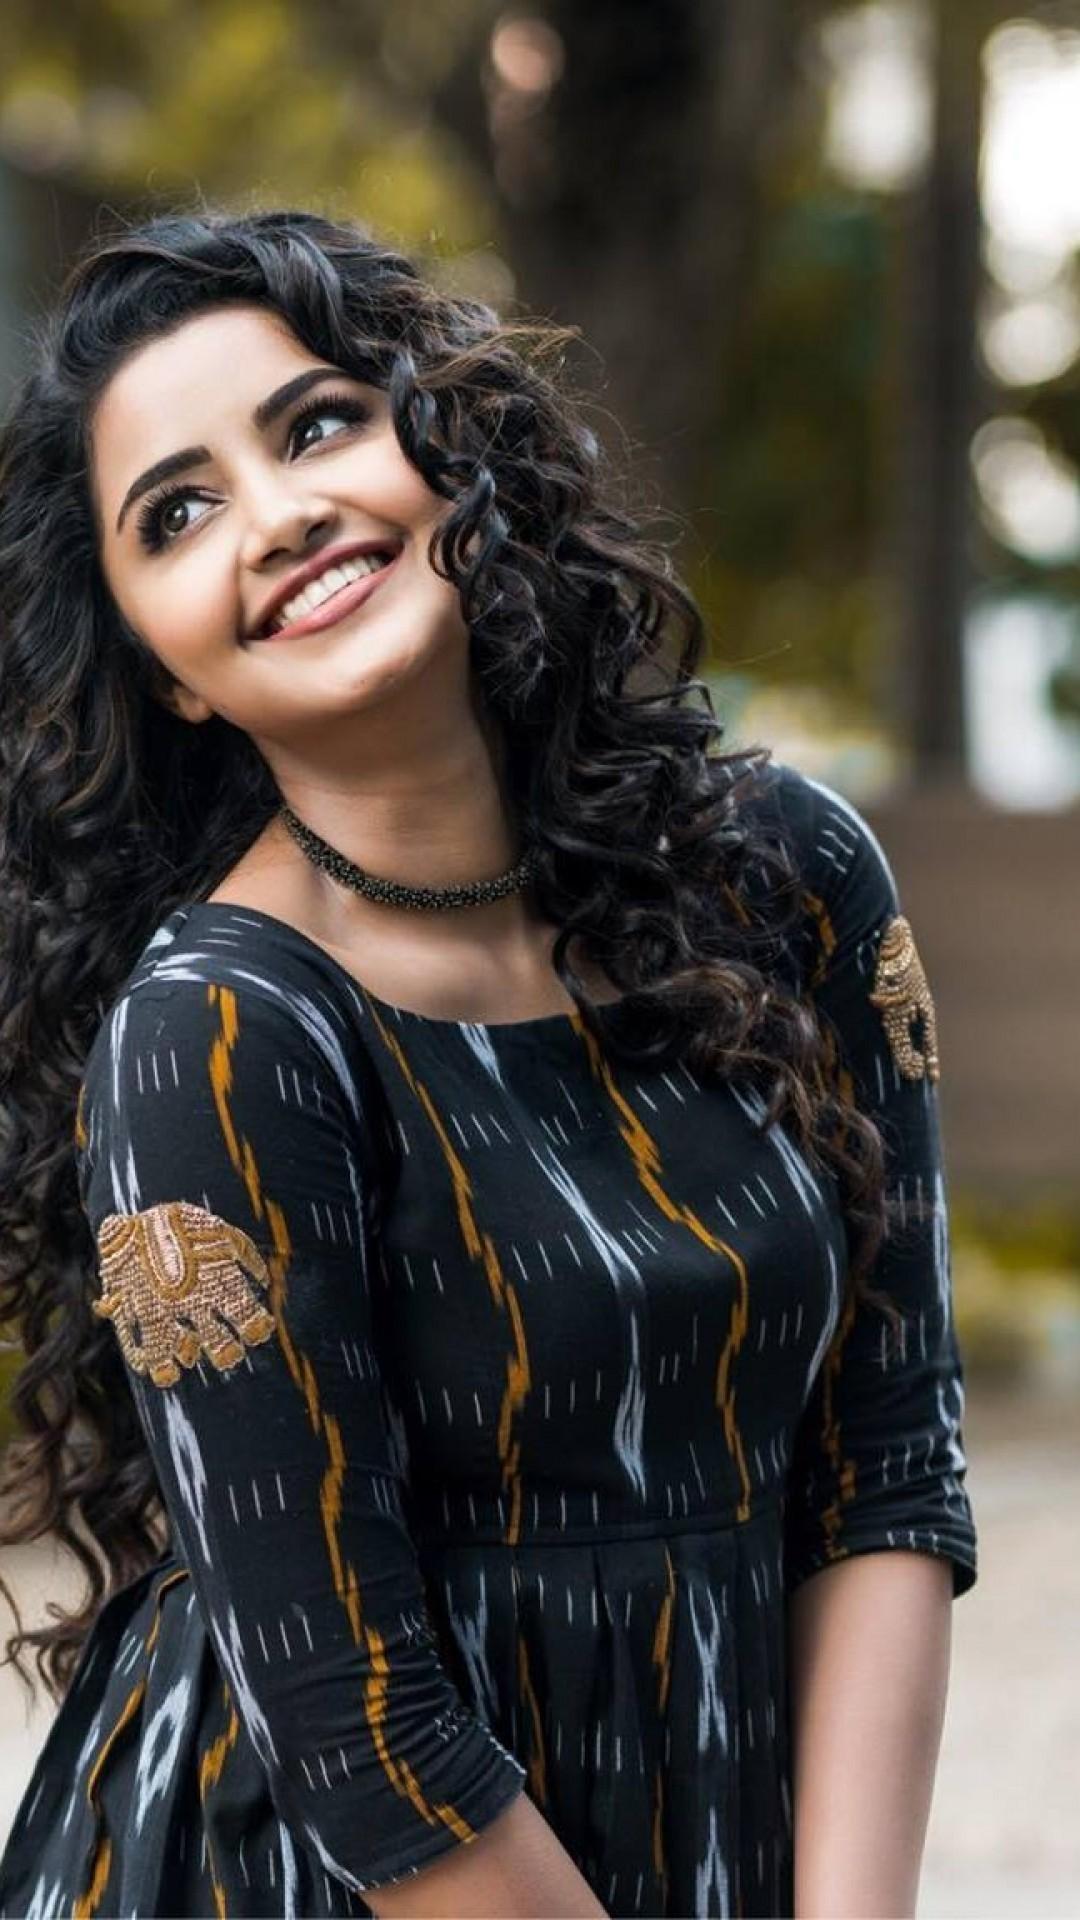 Download 1080x1920 Anupama Parameswaran, Actress, Smiling